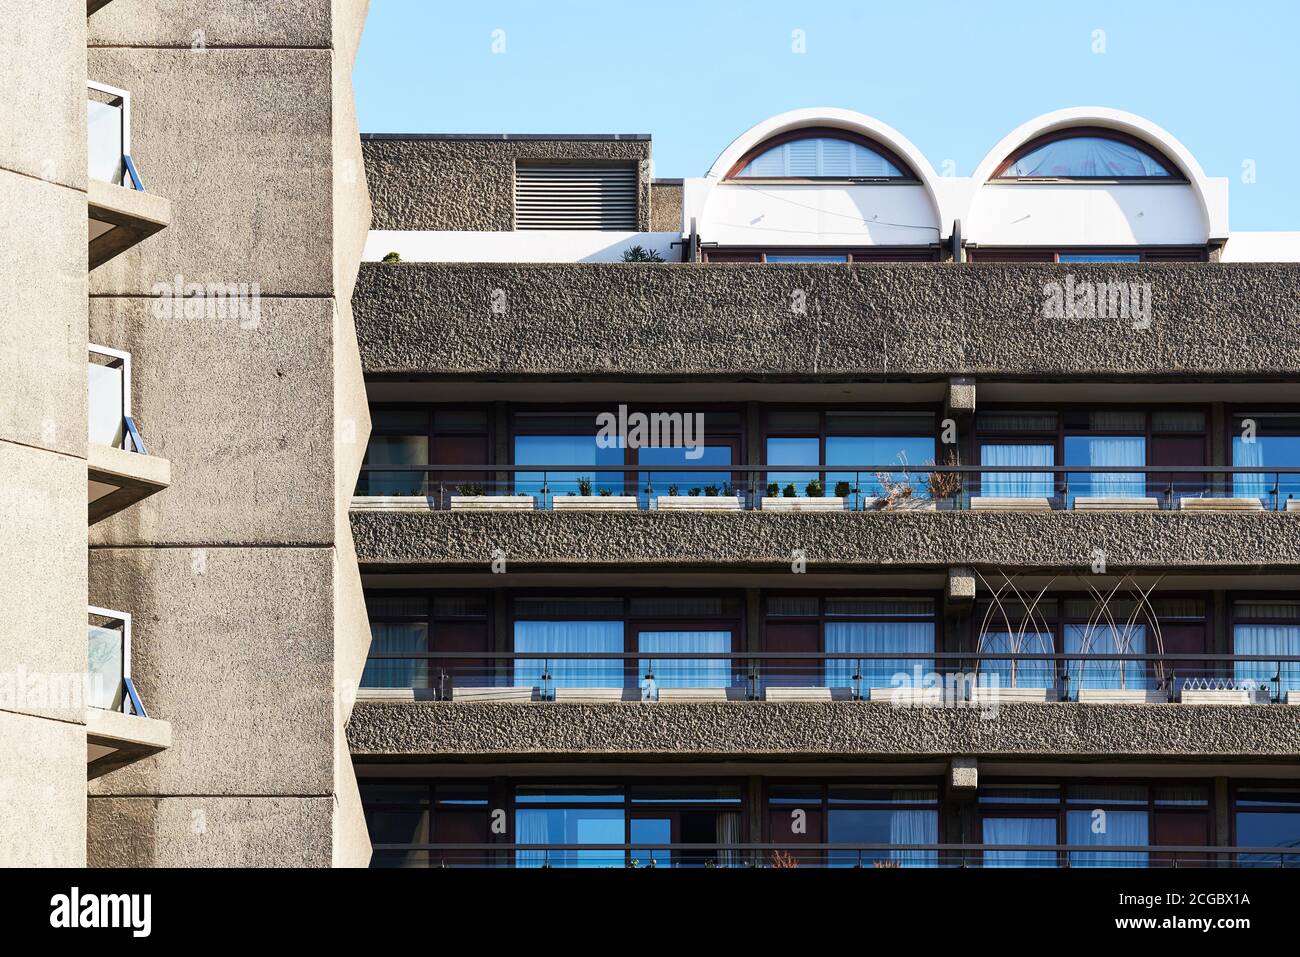 Äußeres Detail von Seddon House, The Barbican Estate, City of London UK. Entworfen von den Architekten Chamberlin, Powell und Bon. Fertiggestellt im Jahr 1974. Stockfoto